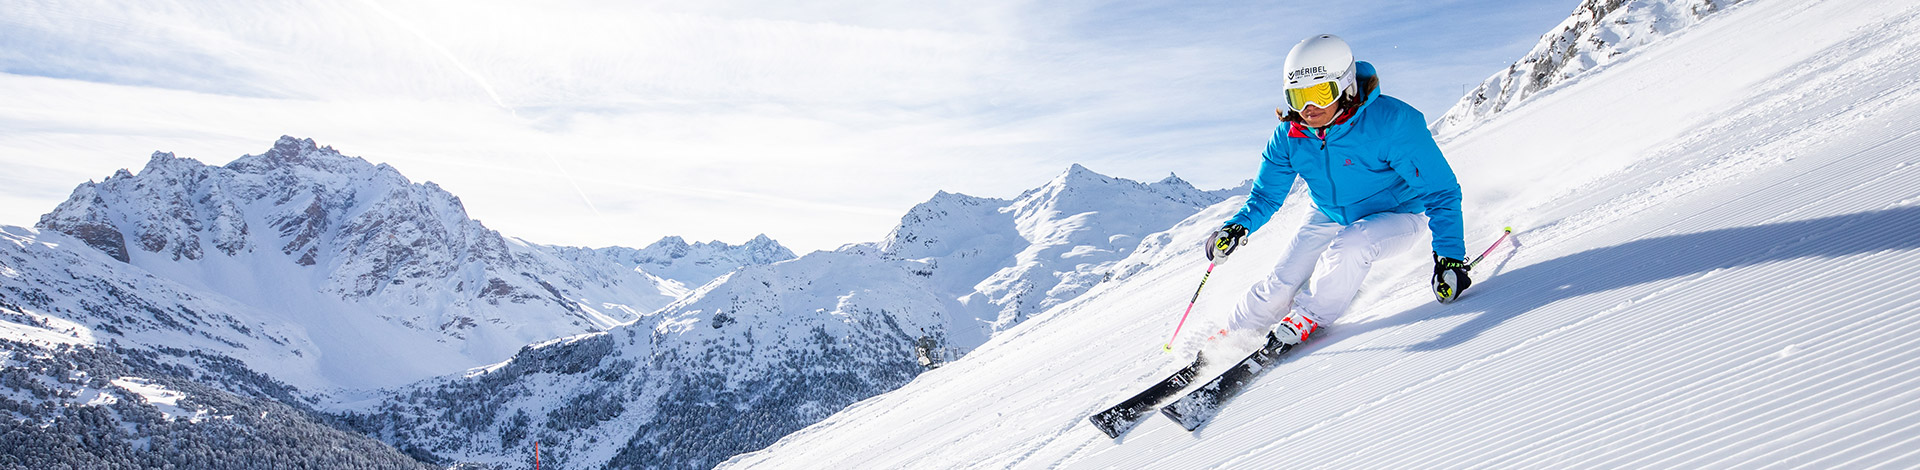 Ski alpin à Méribel au cœur des 3 Vallées grâce à l'abonnement 3 Vallées Liberté